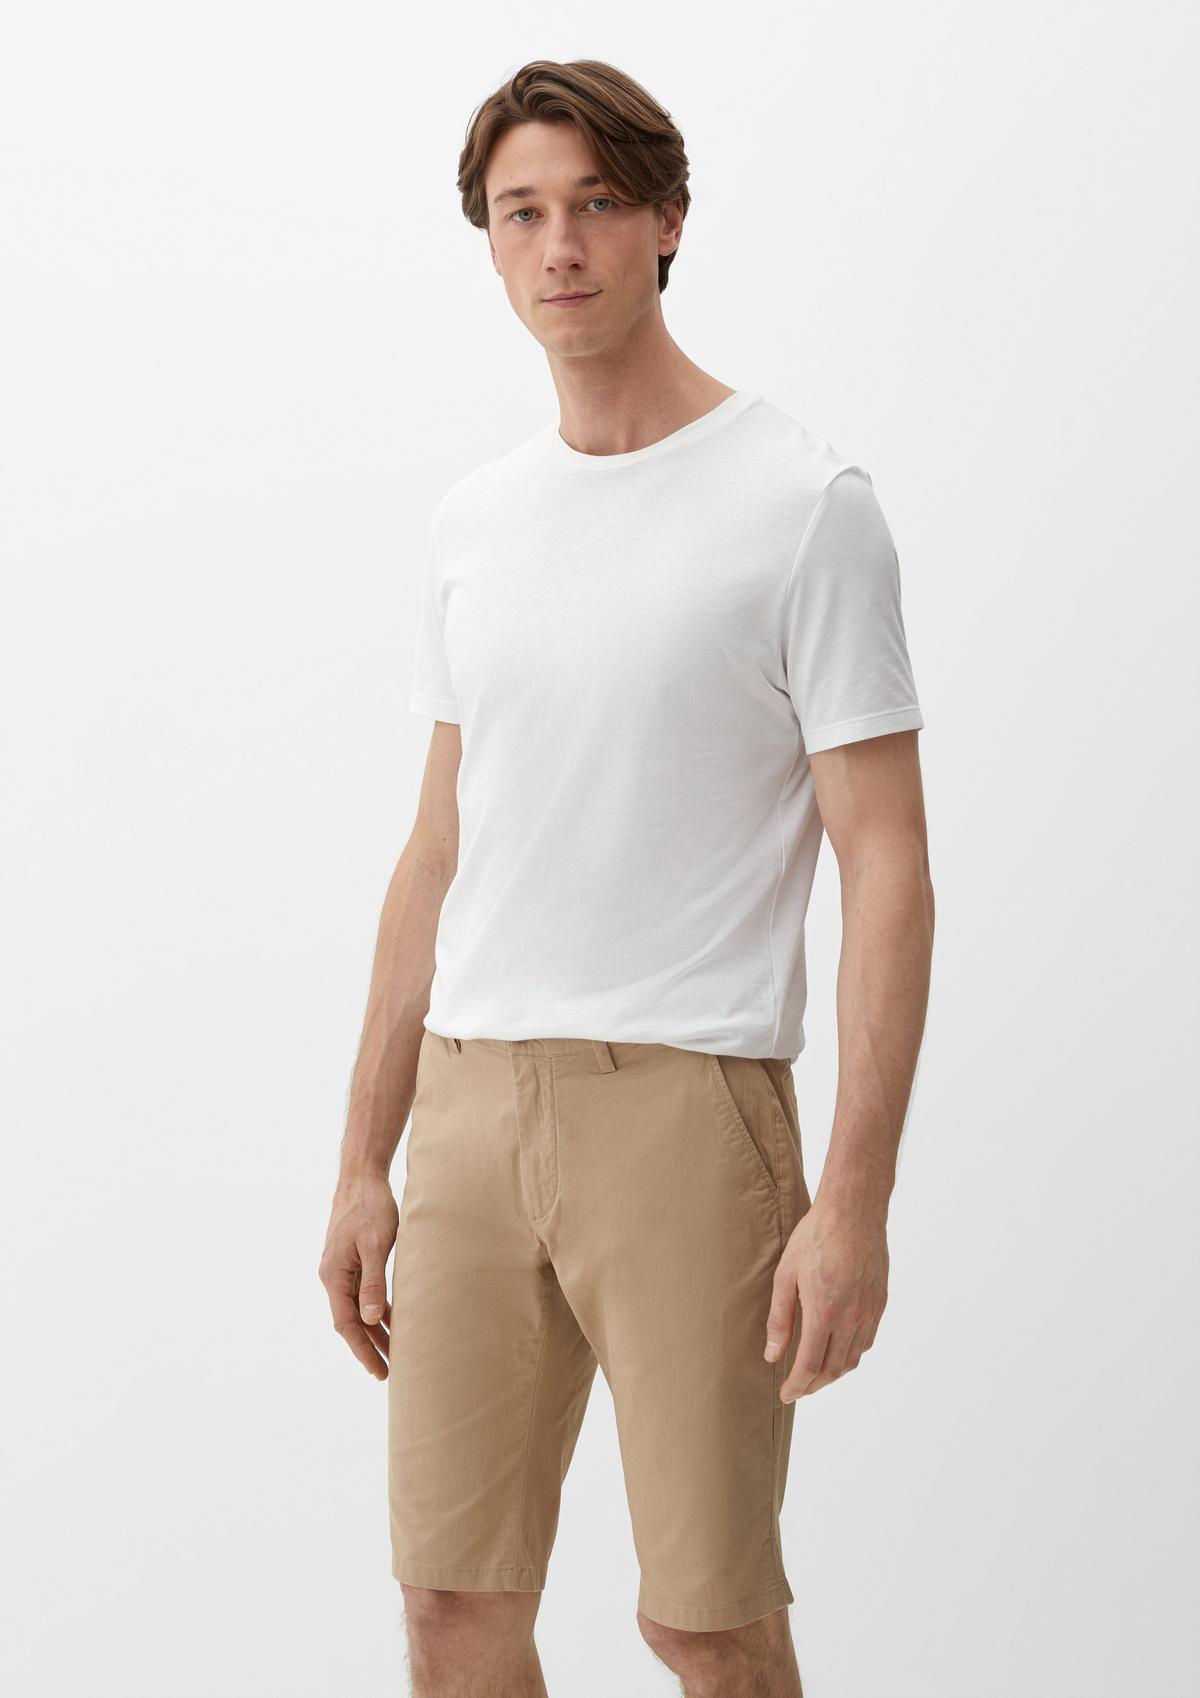 white in Bermuda shorts blended - linen